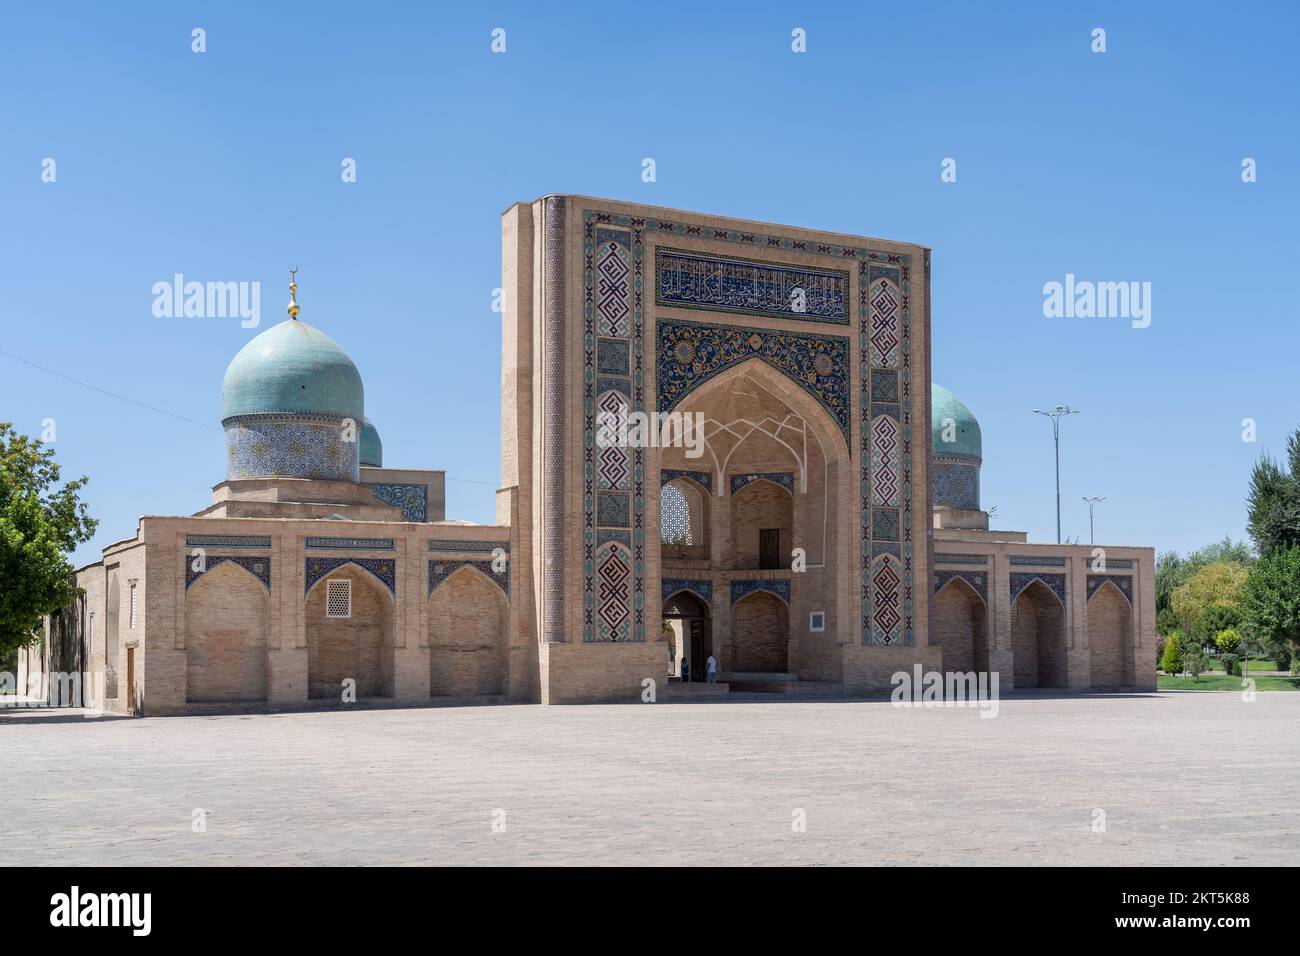 Vue sur le paysage de la façade et des dômes bleus de Barakhan ou Barak Khan madrasa sur la place Khast Imam, le centre religieux de Tachkent, Ouzbékistan Banque D'Images